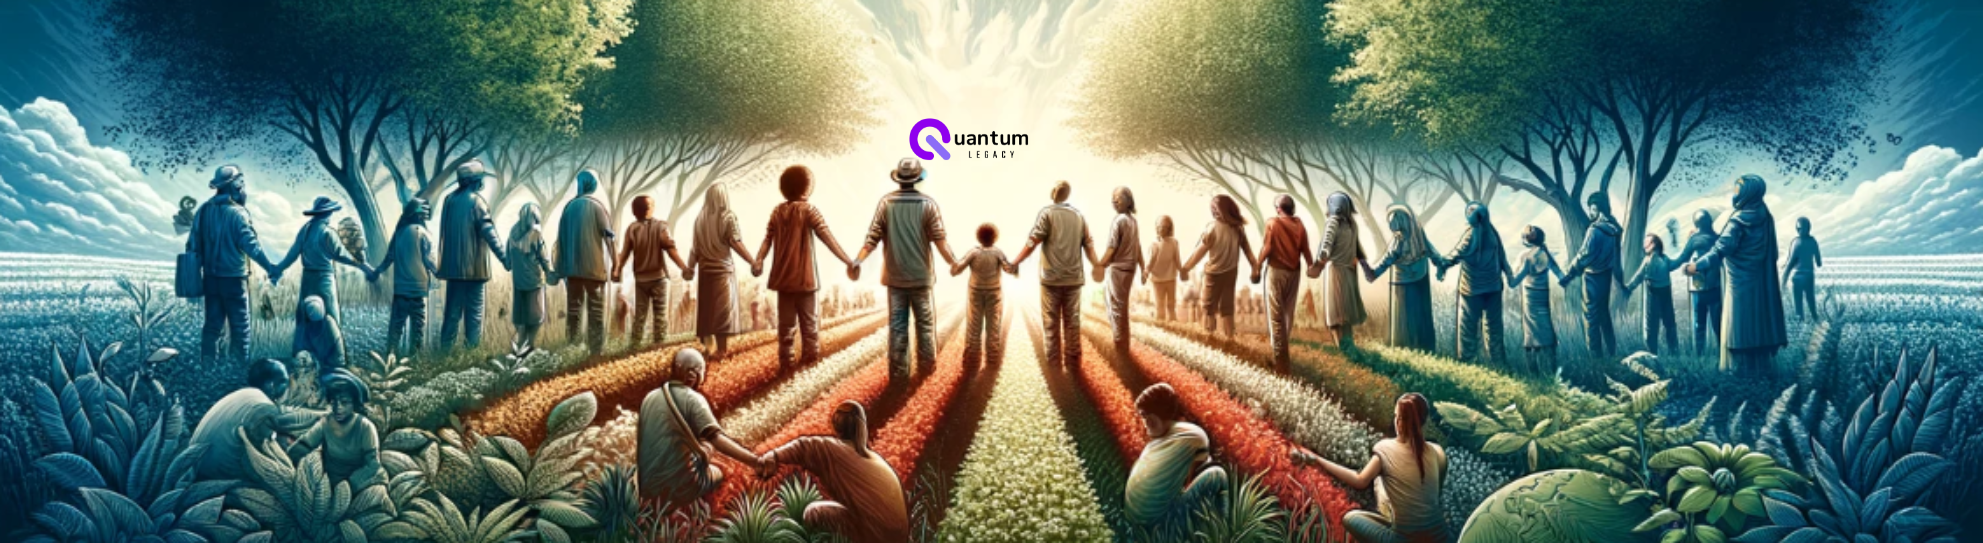 Quantum Legacy - Transformando Vidas a través de la ayuda y la solidaridad